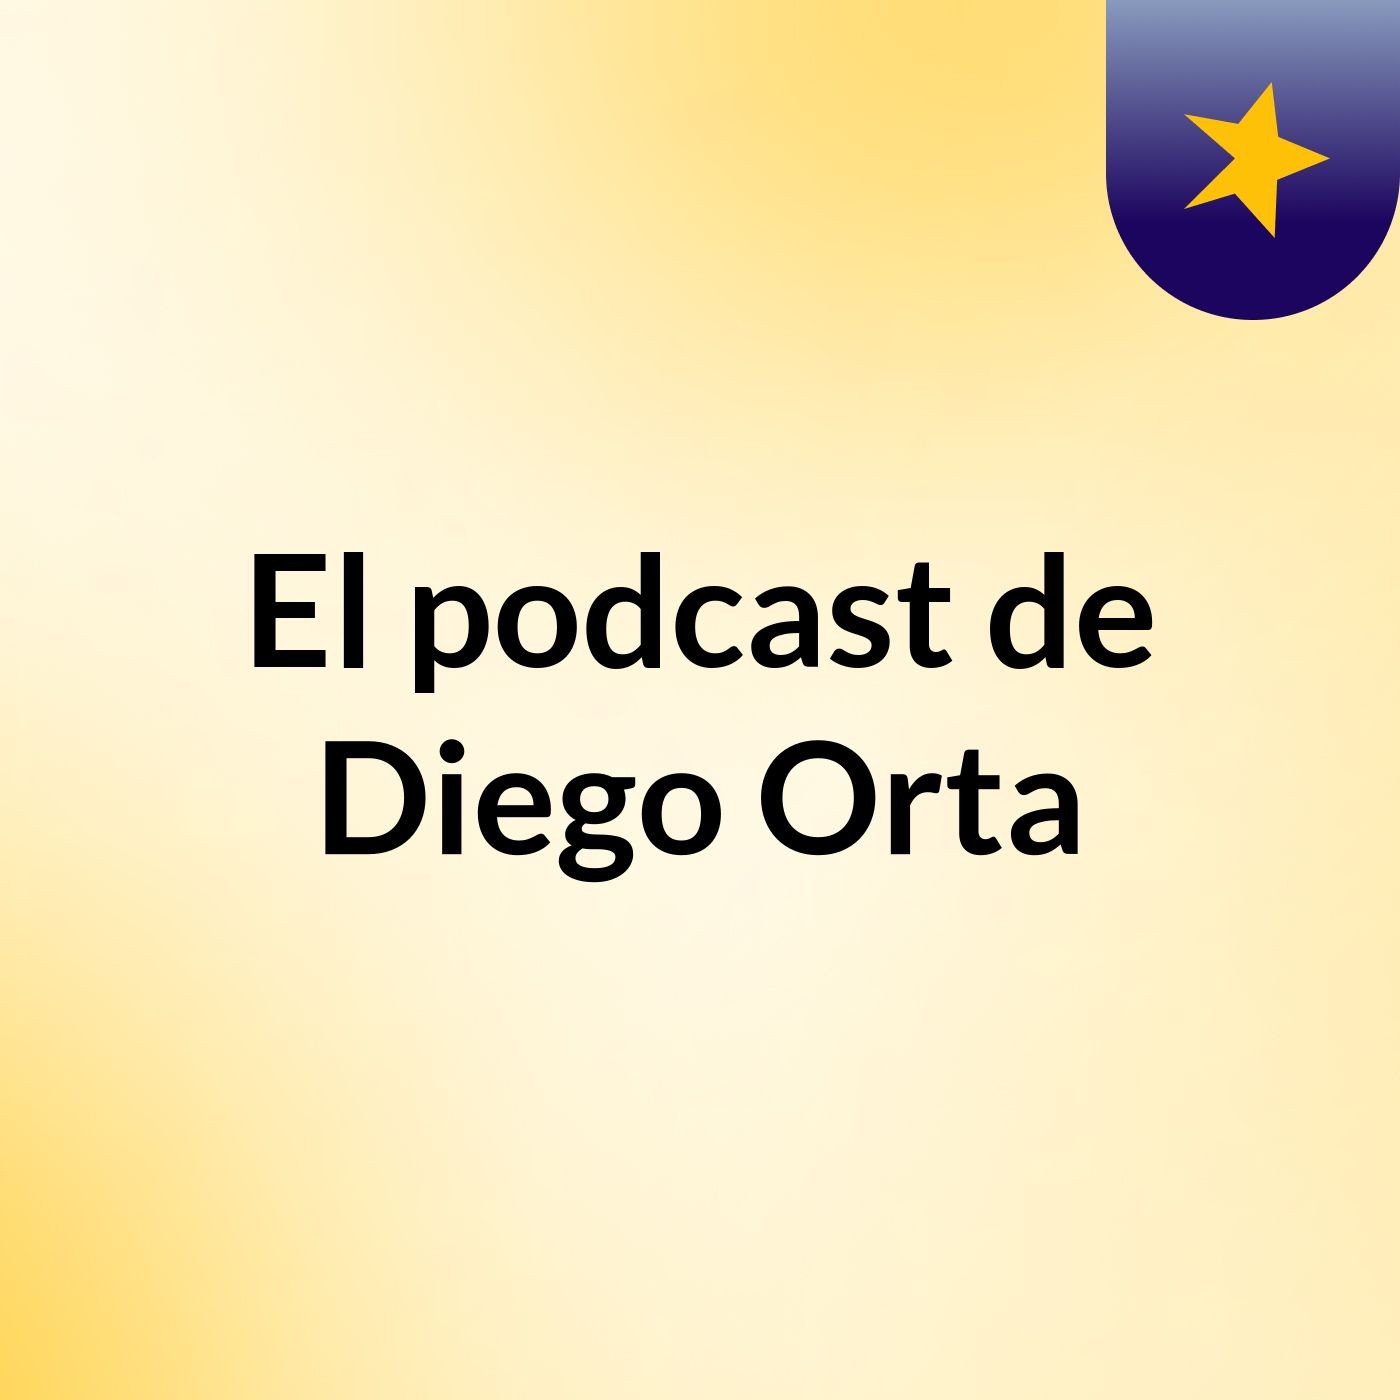 El podcast de Diego Orta